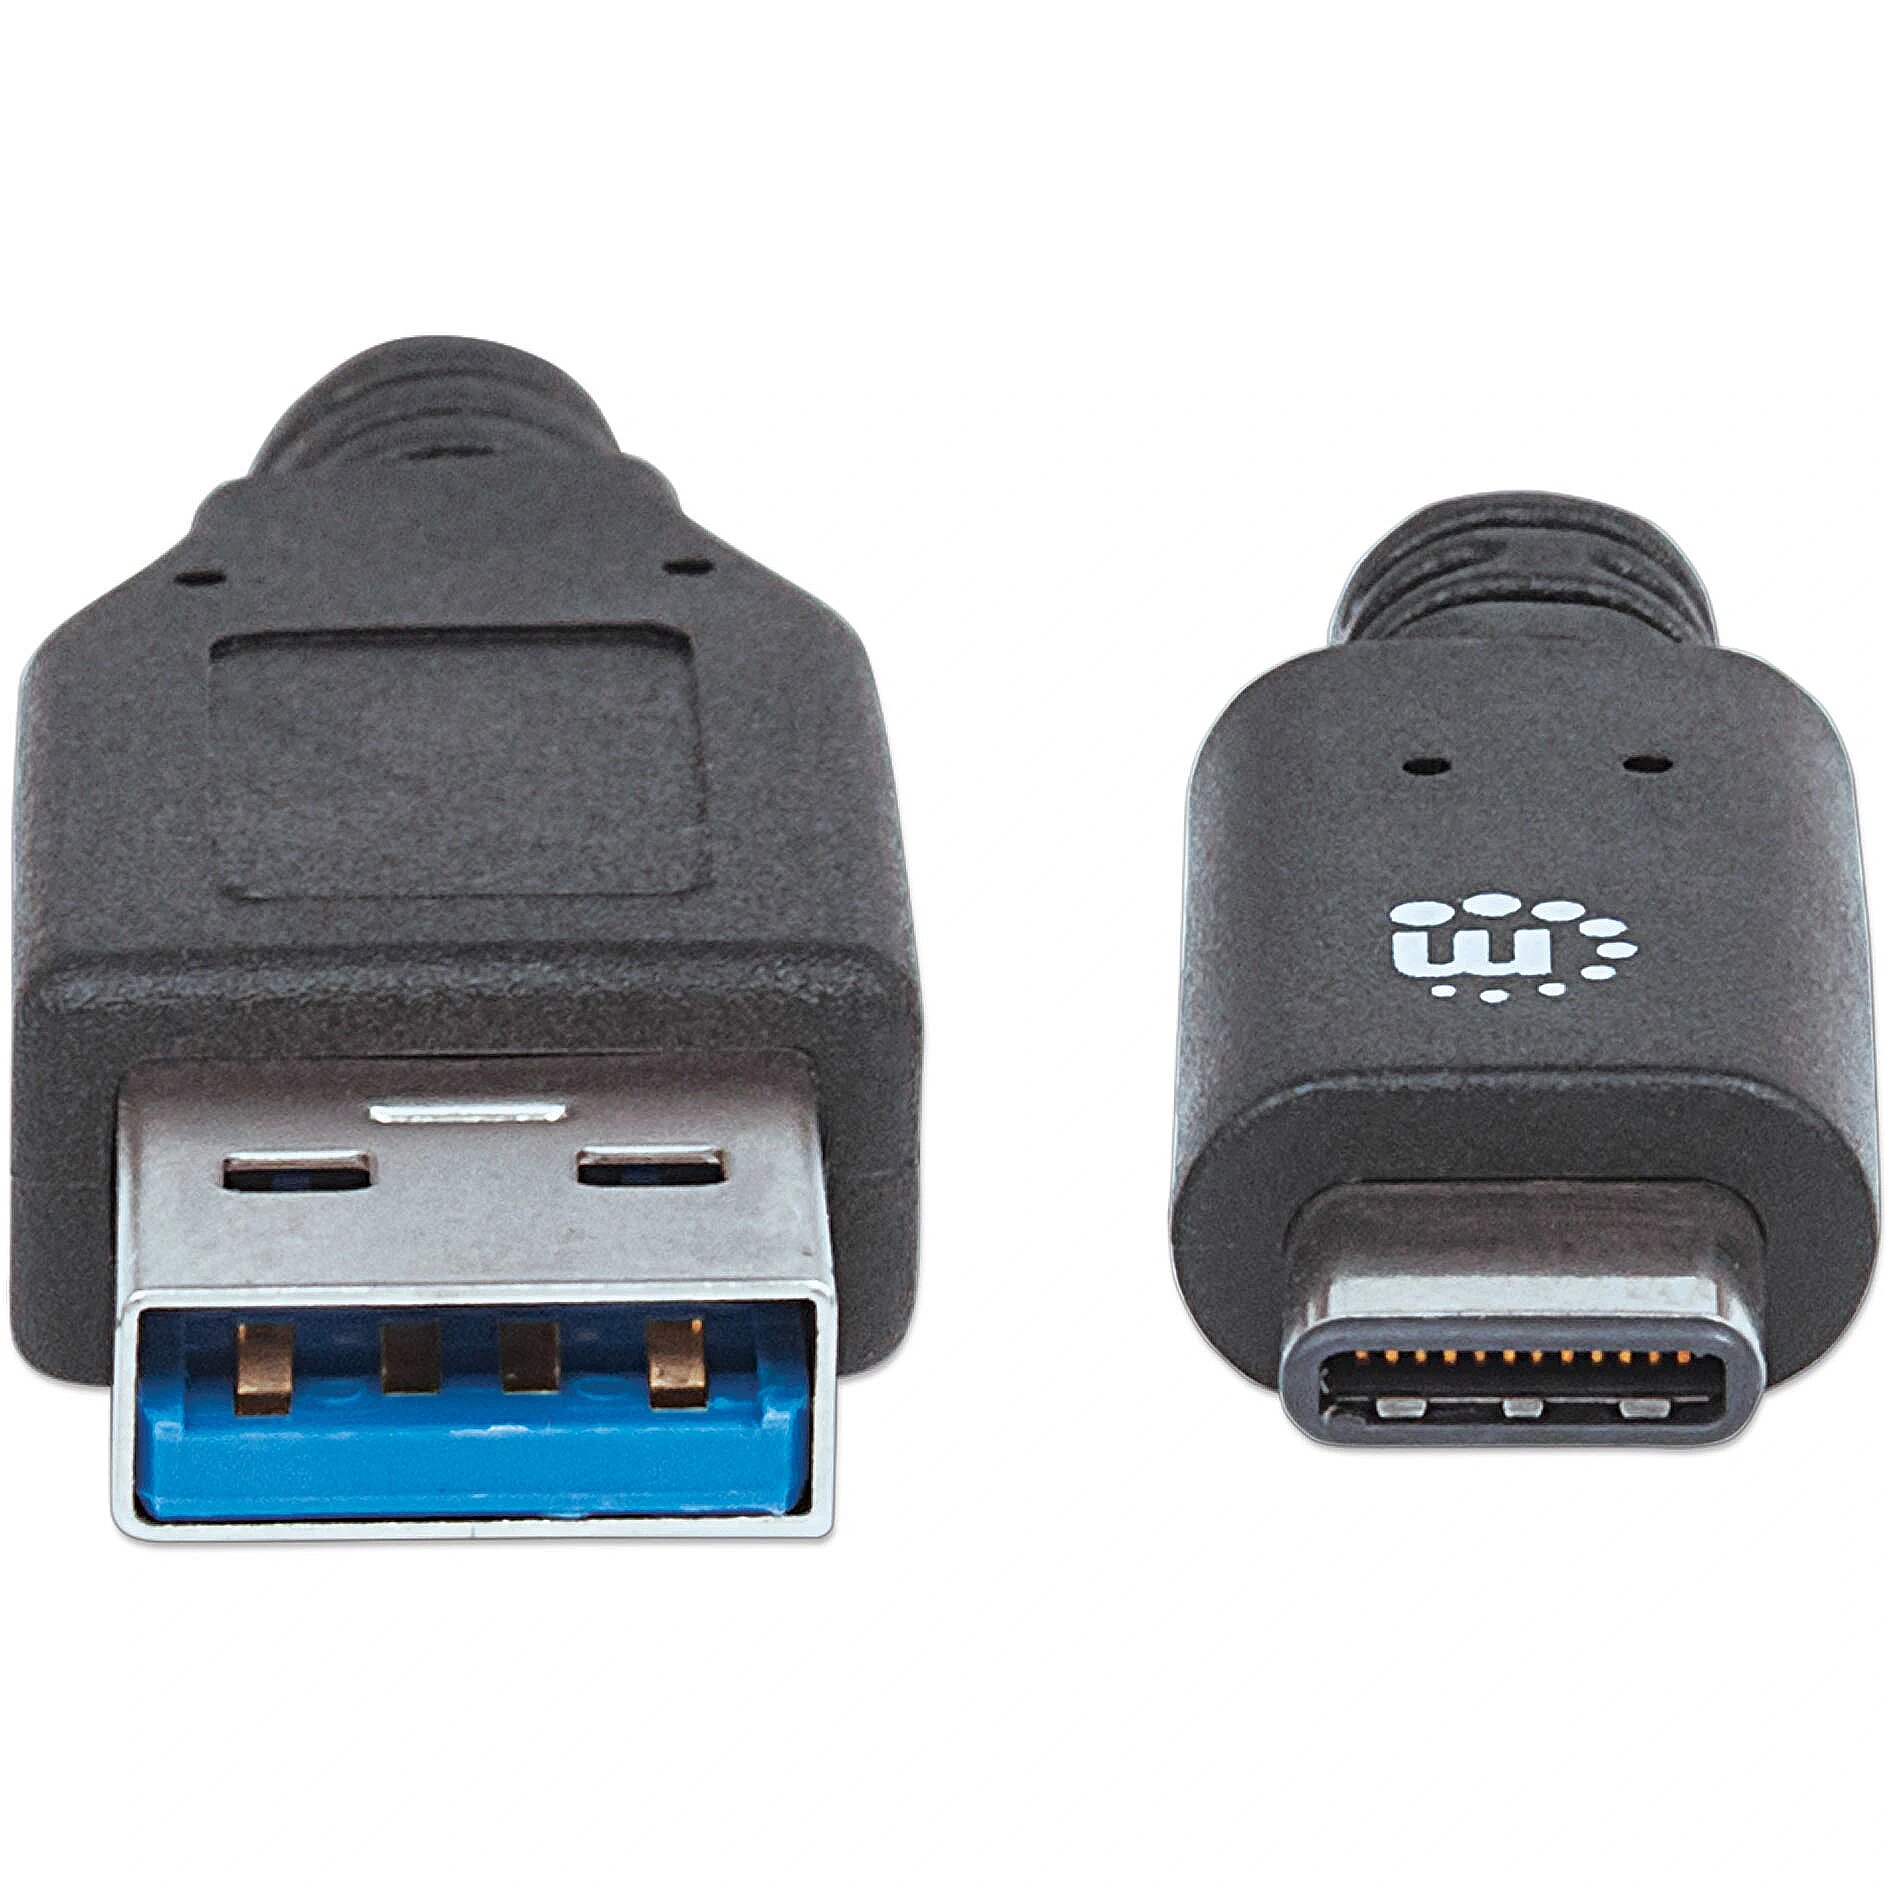 Usb 3.2 gen 1 type a. Переходник deppa USB 3.2 gen1 Type-a - USB 3.2 gen1 Type-c. 2 SUPERSPEED USB Type-a. Юсб 3.2 ген 1.